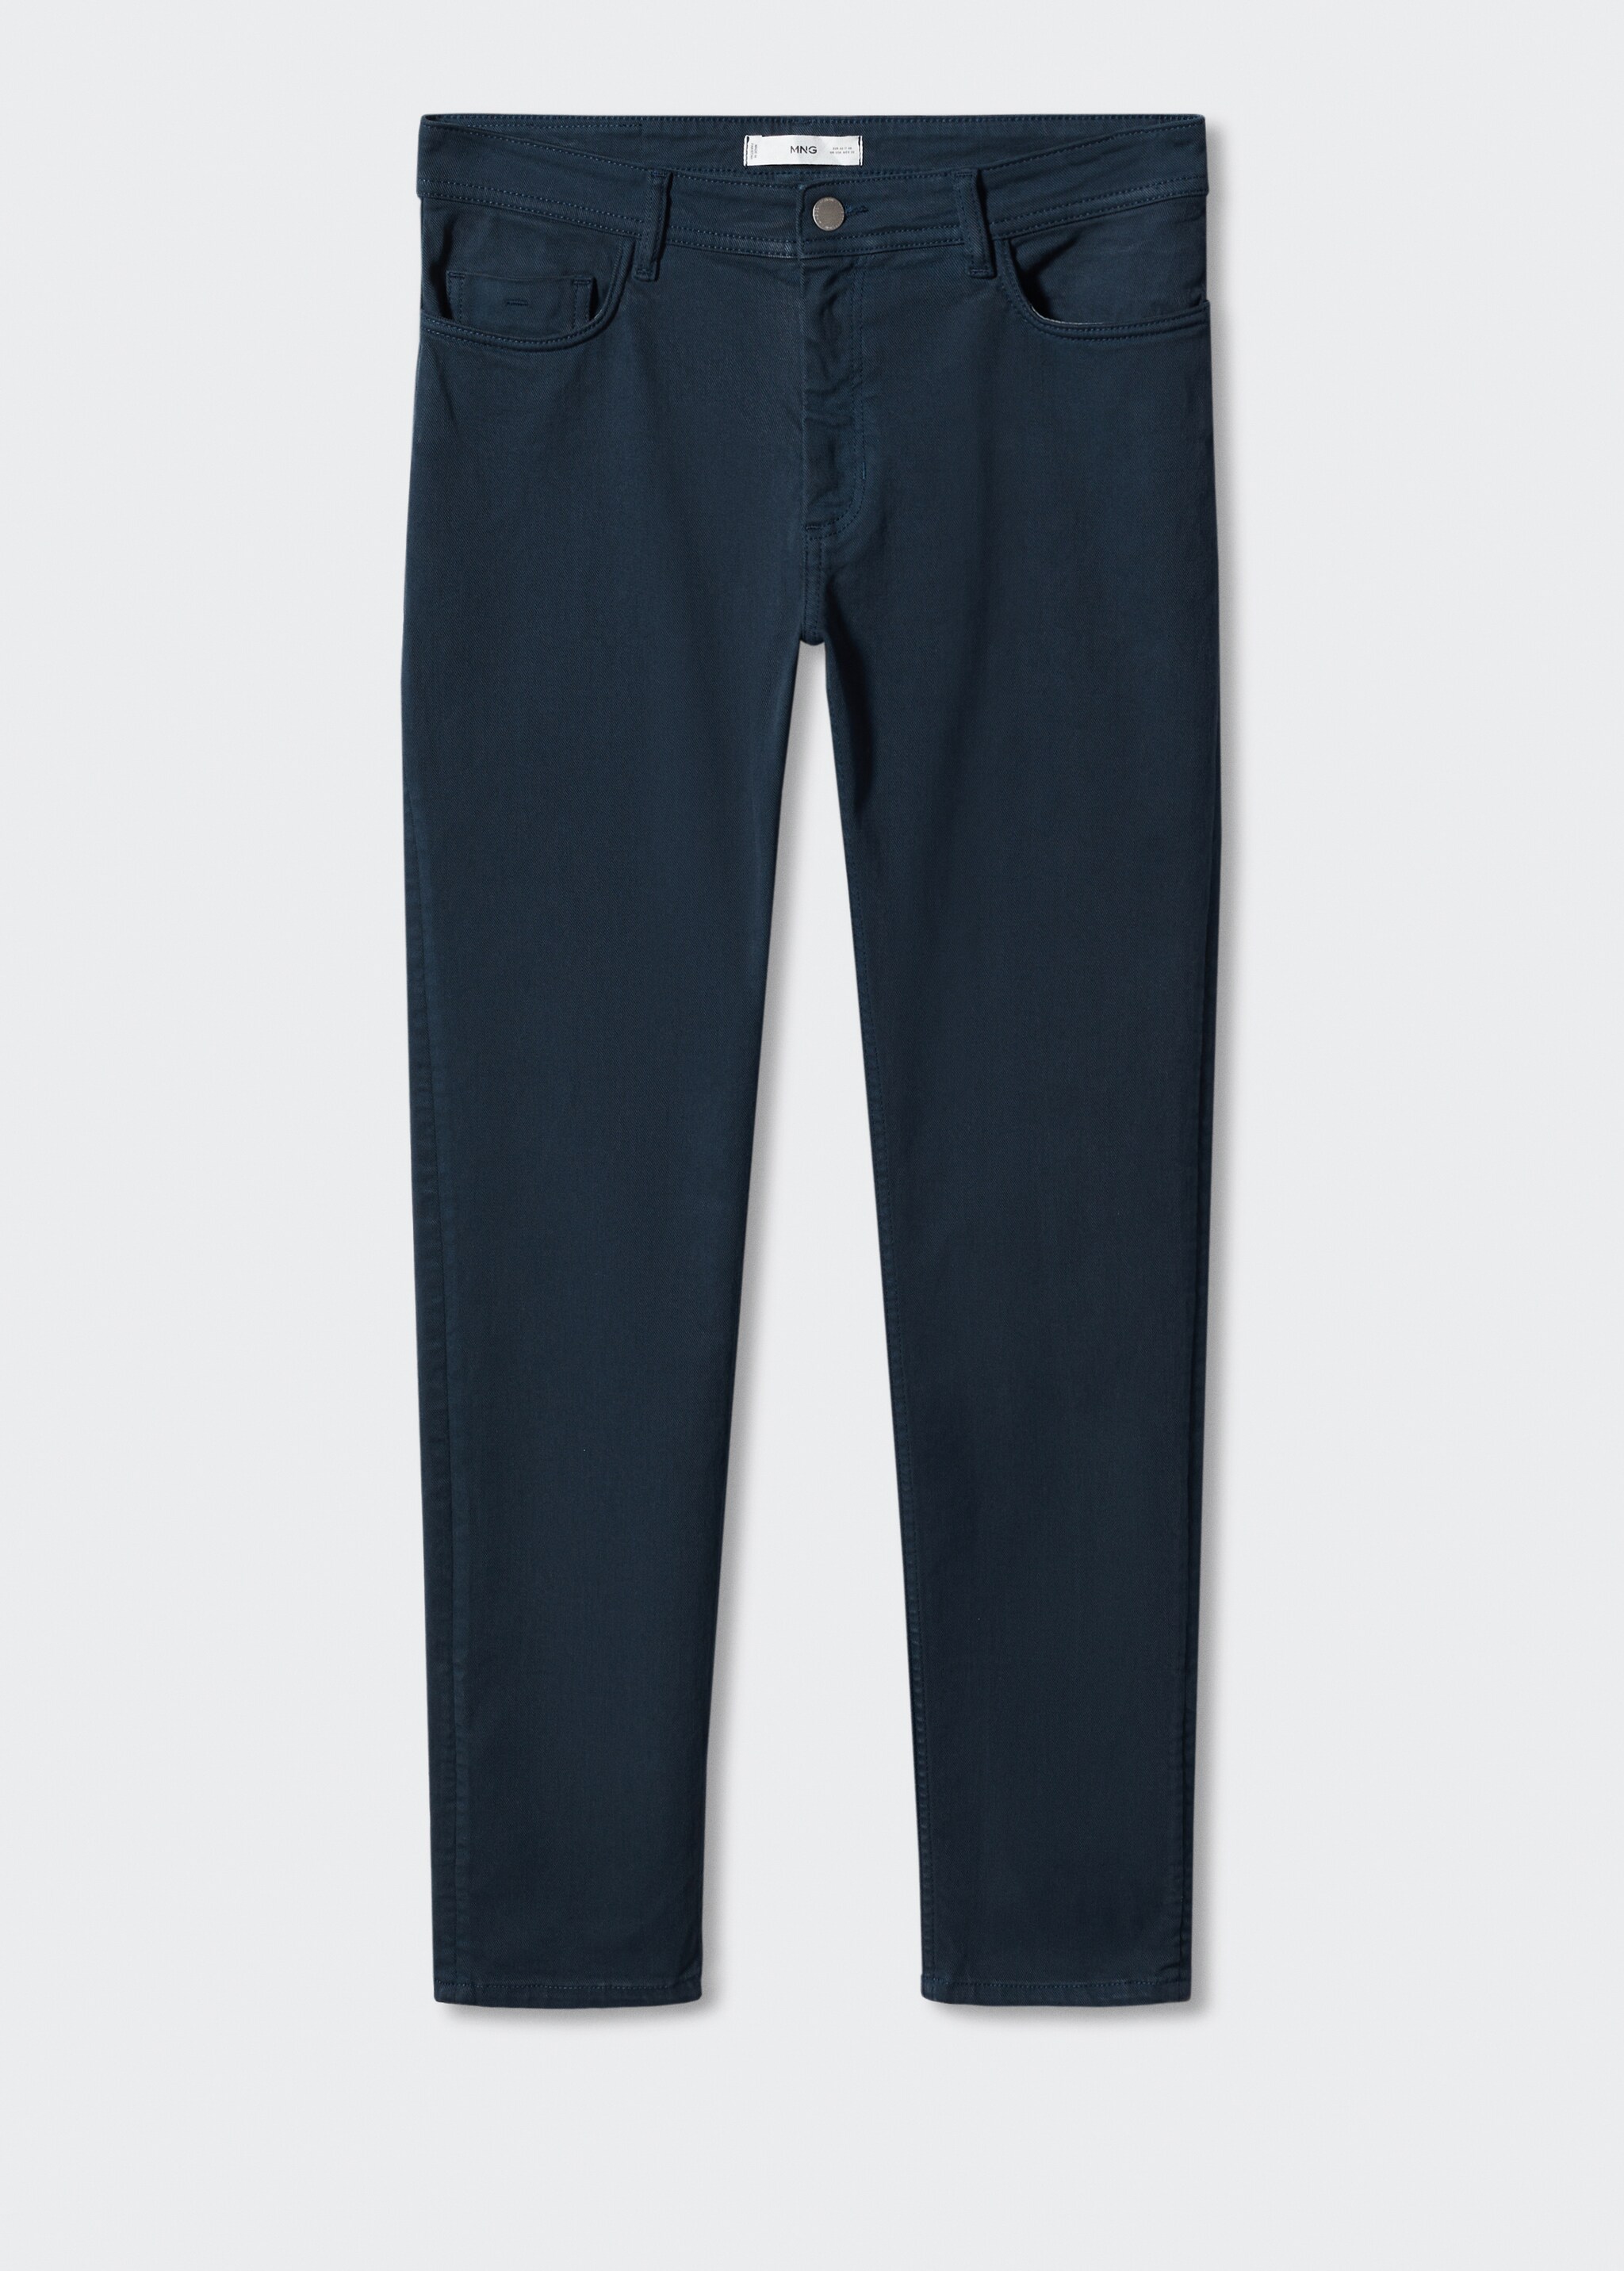 Jeans slim fit de cor - Artigo sem modelo